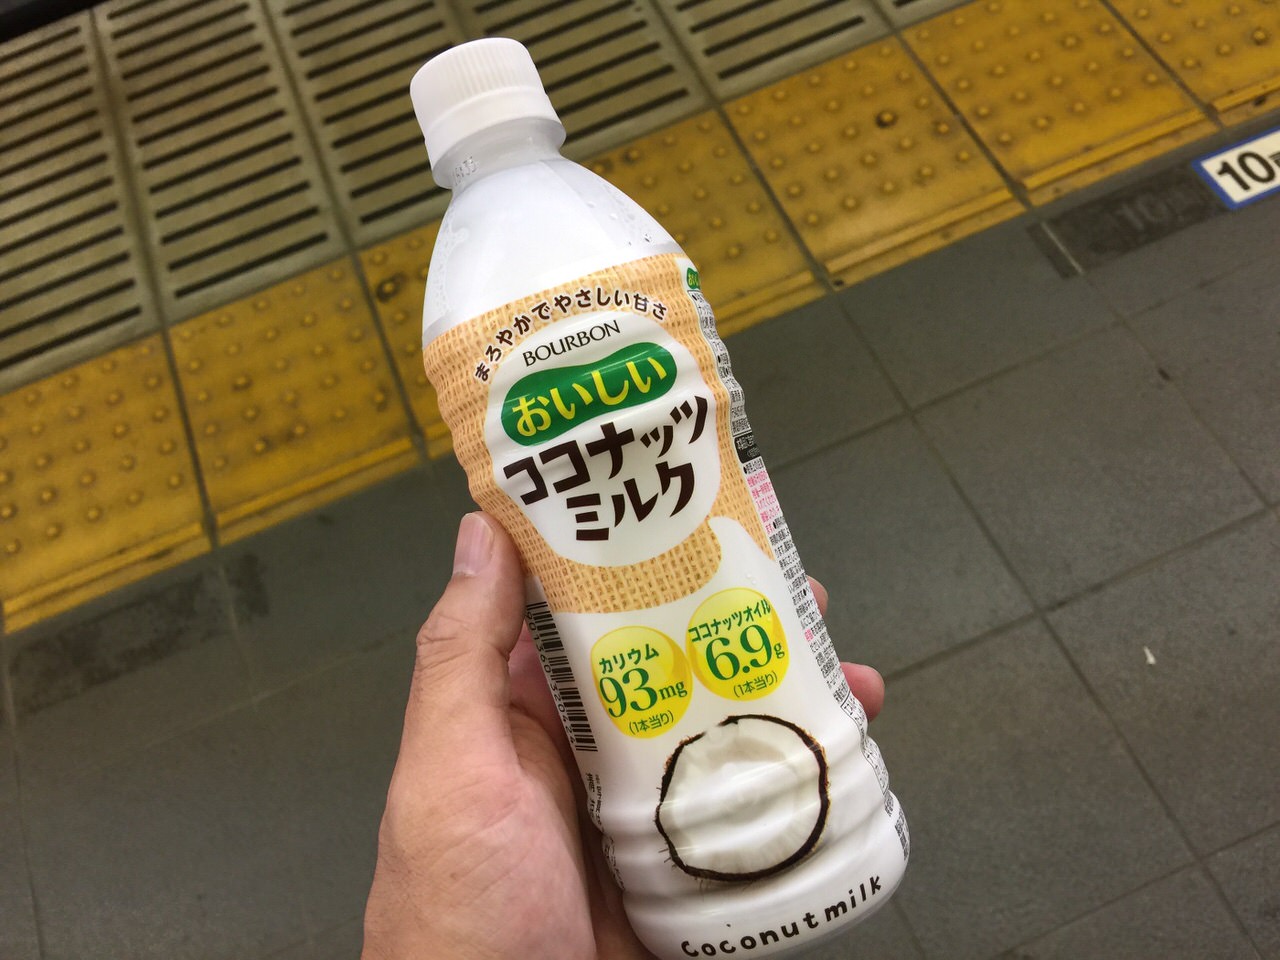 Coconuts milk 5881